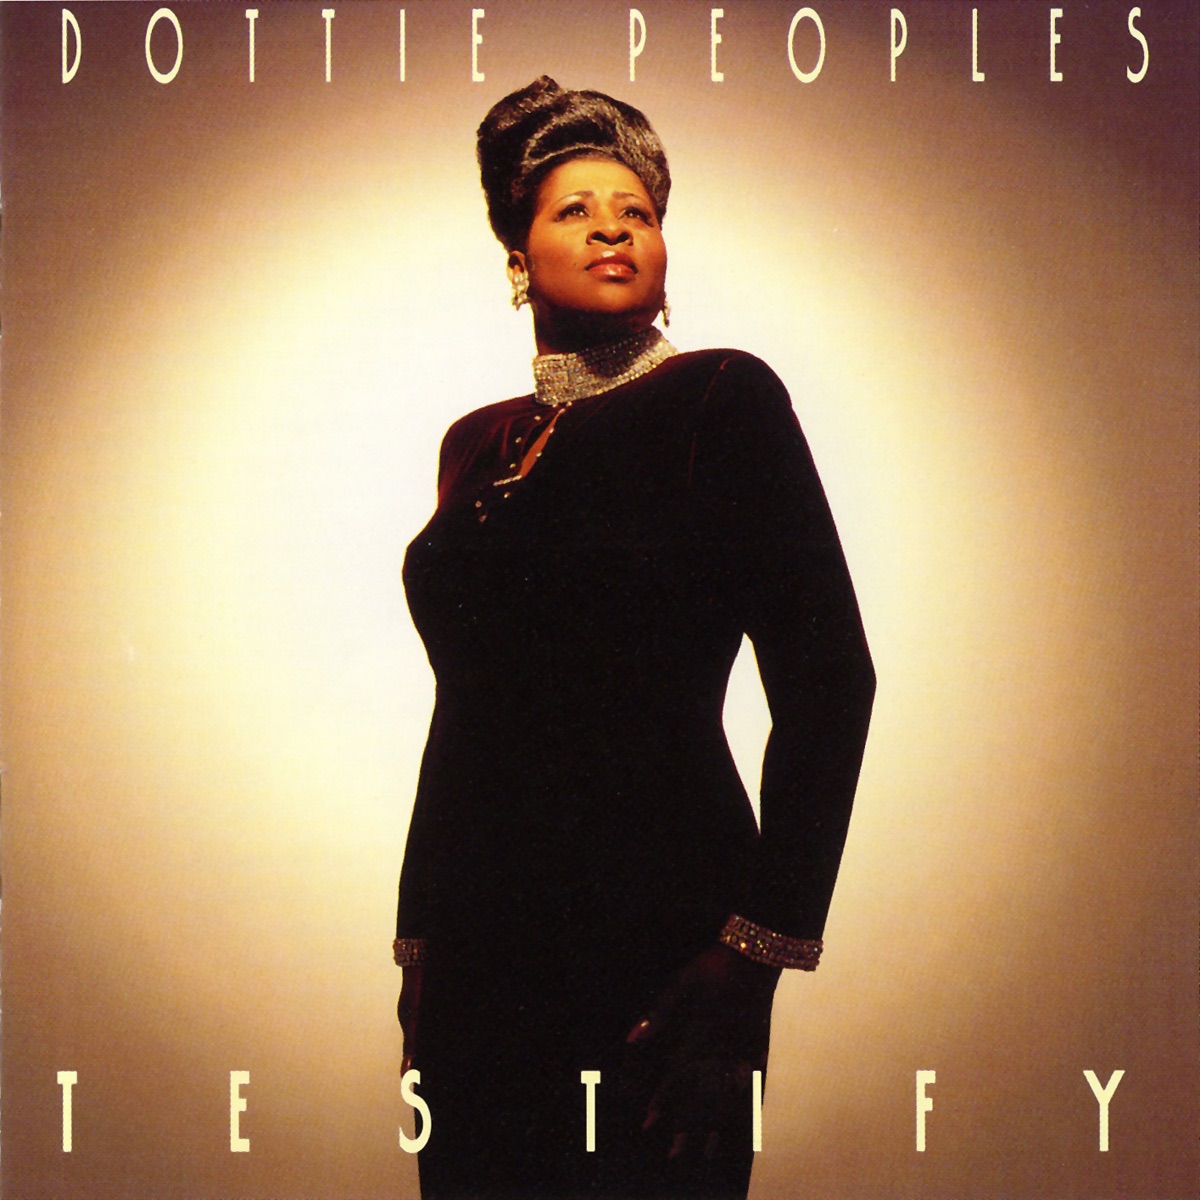 Testify - Album by Dottie Peoples - Apple Music